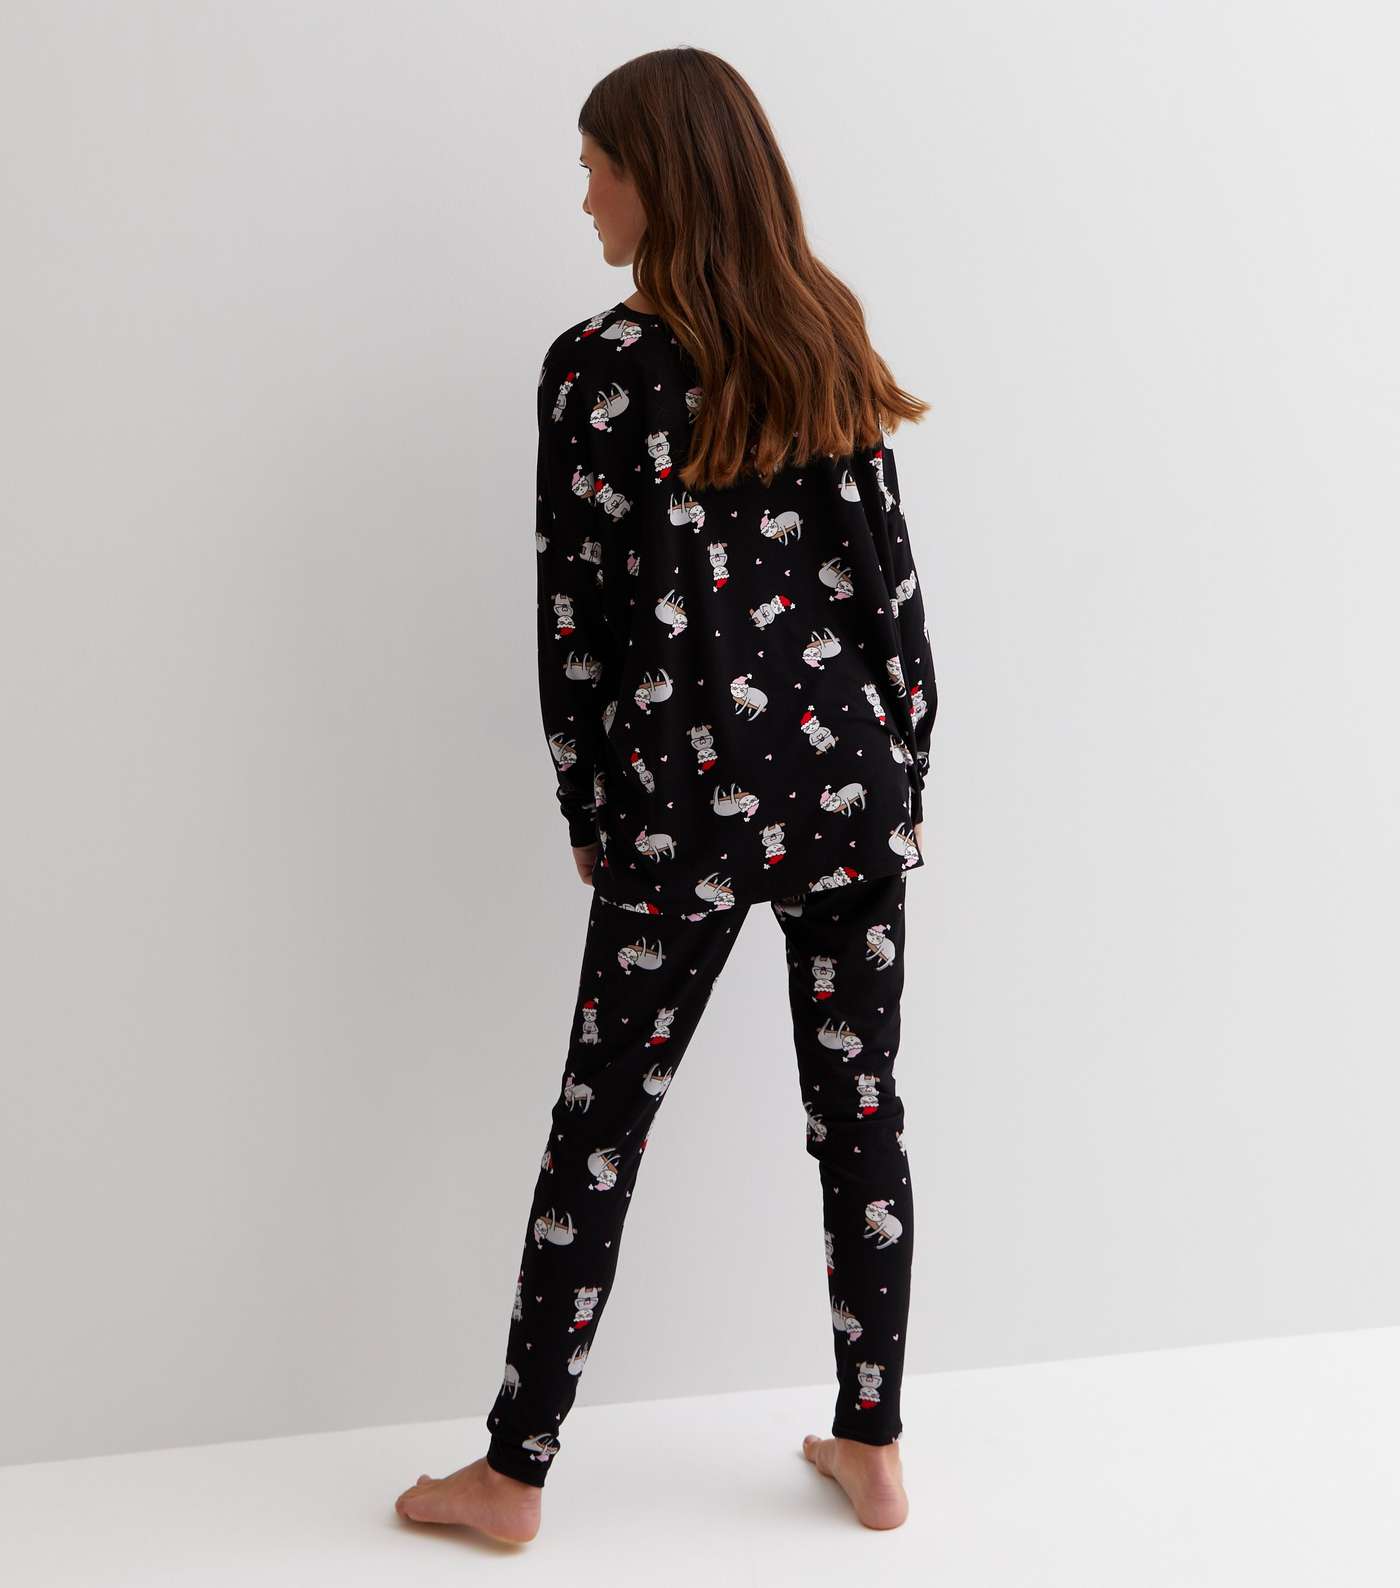 Girls Black Soft Touch Legging Pyjama Set with Christmas Sloth Image 5